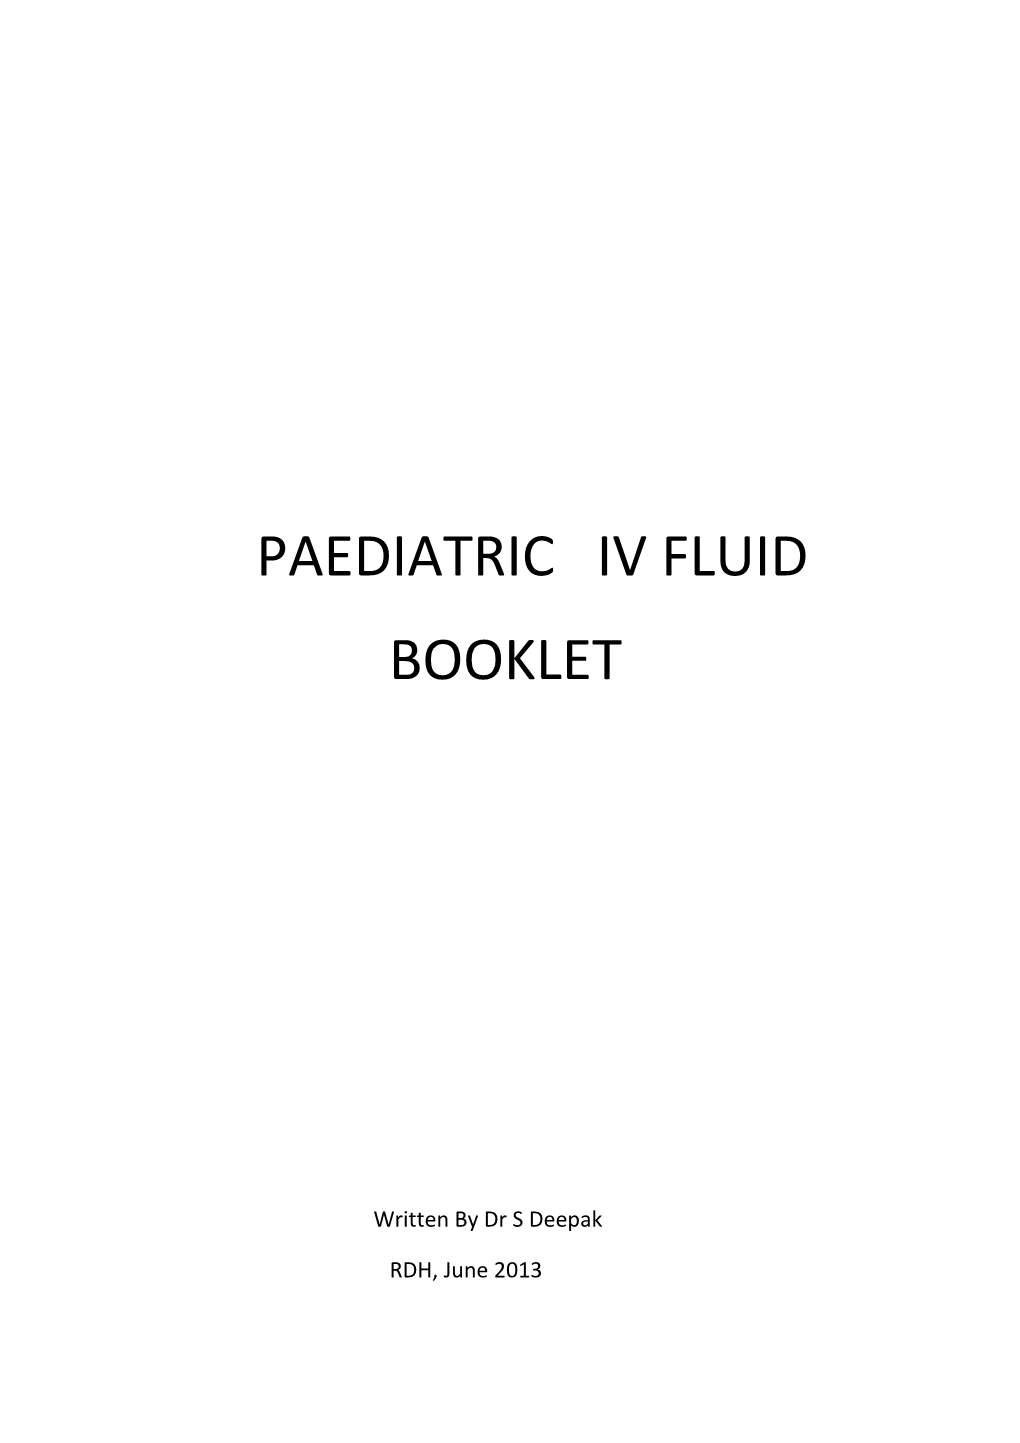 Paediatric Iv Fluid